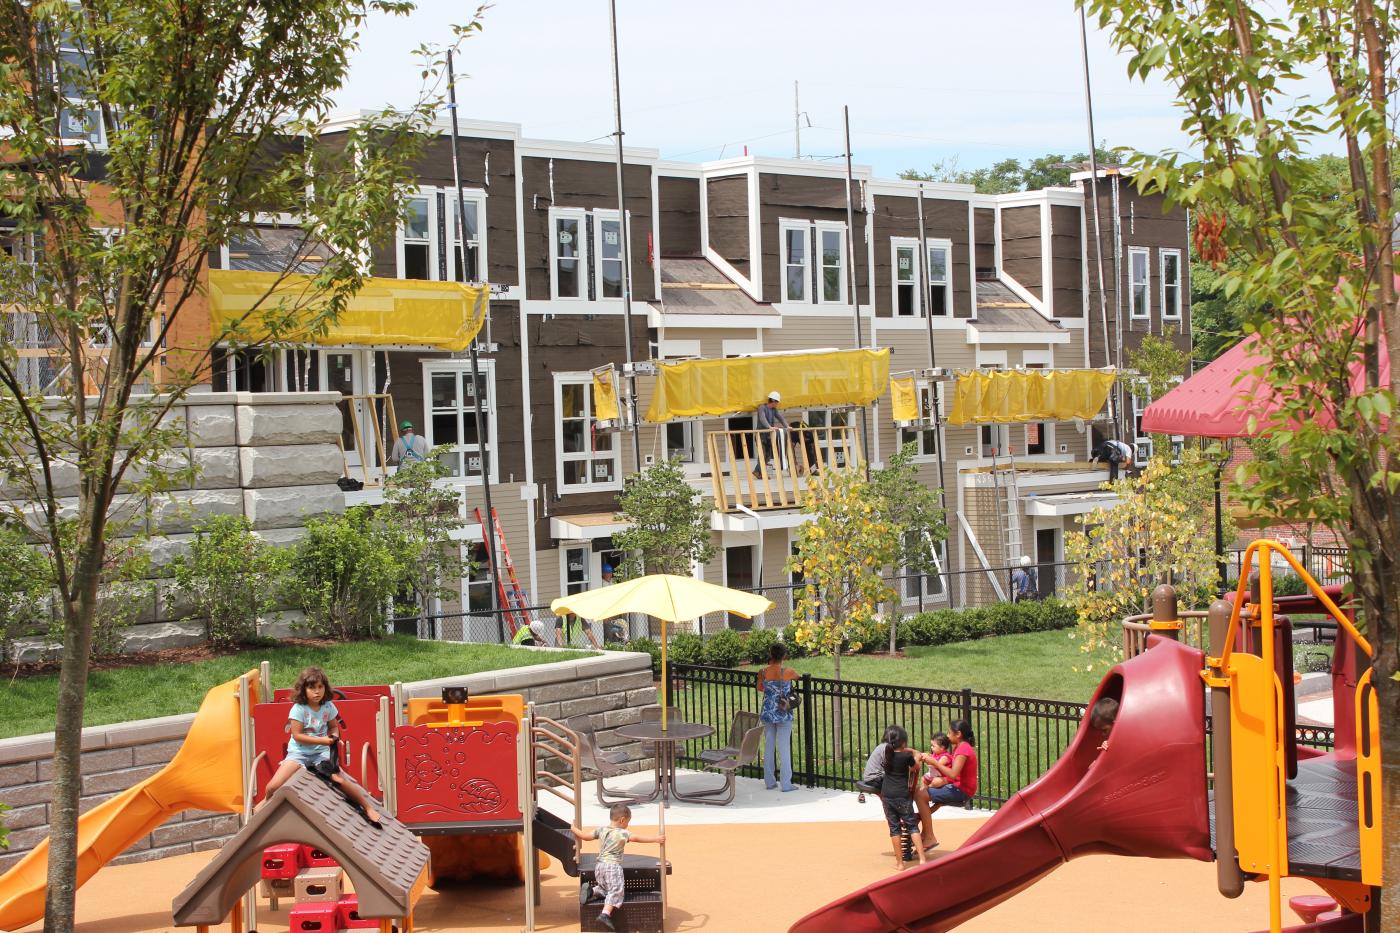 Housing behind a children's playground